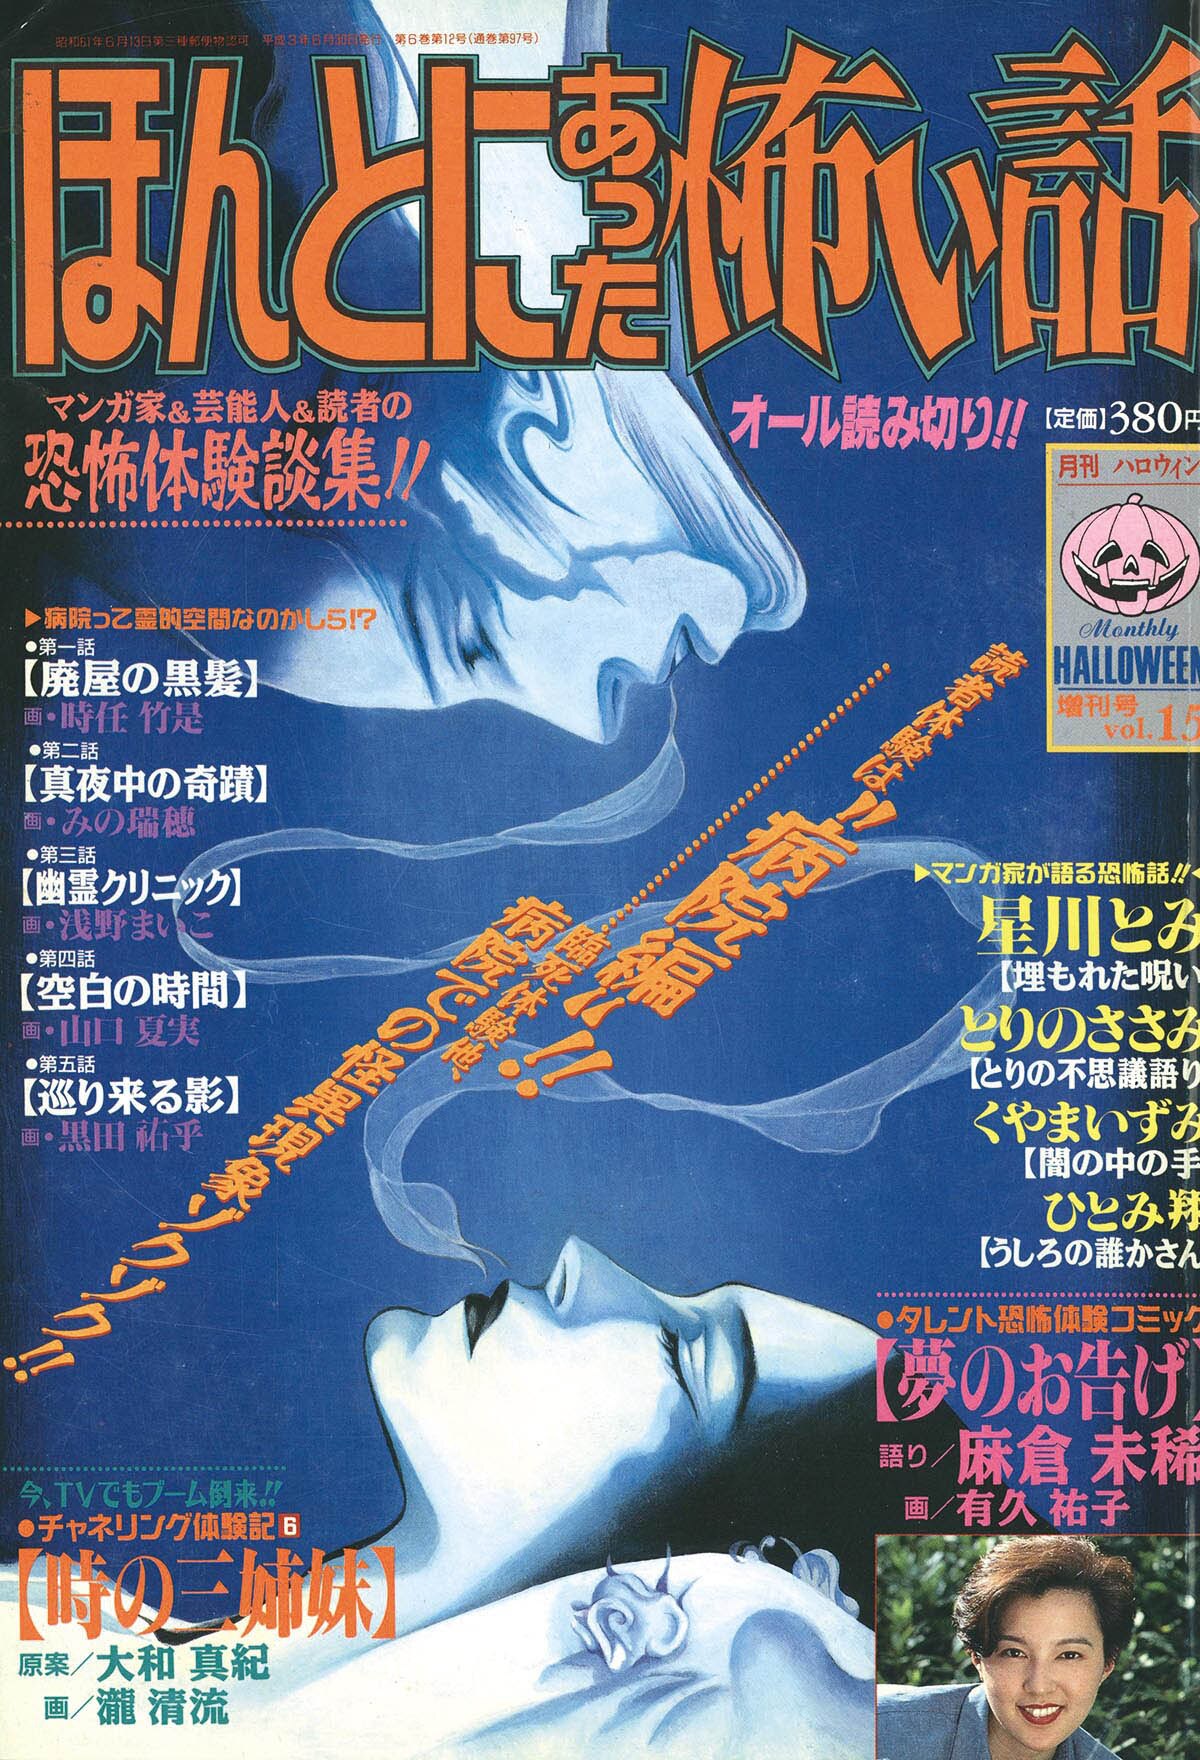 9819] 月刊ハロウィン増刊号 ほんとにあった怖い話 Vol.15 1991(H03)06.30